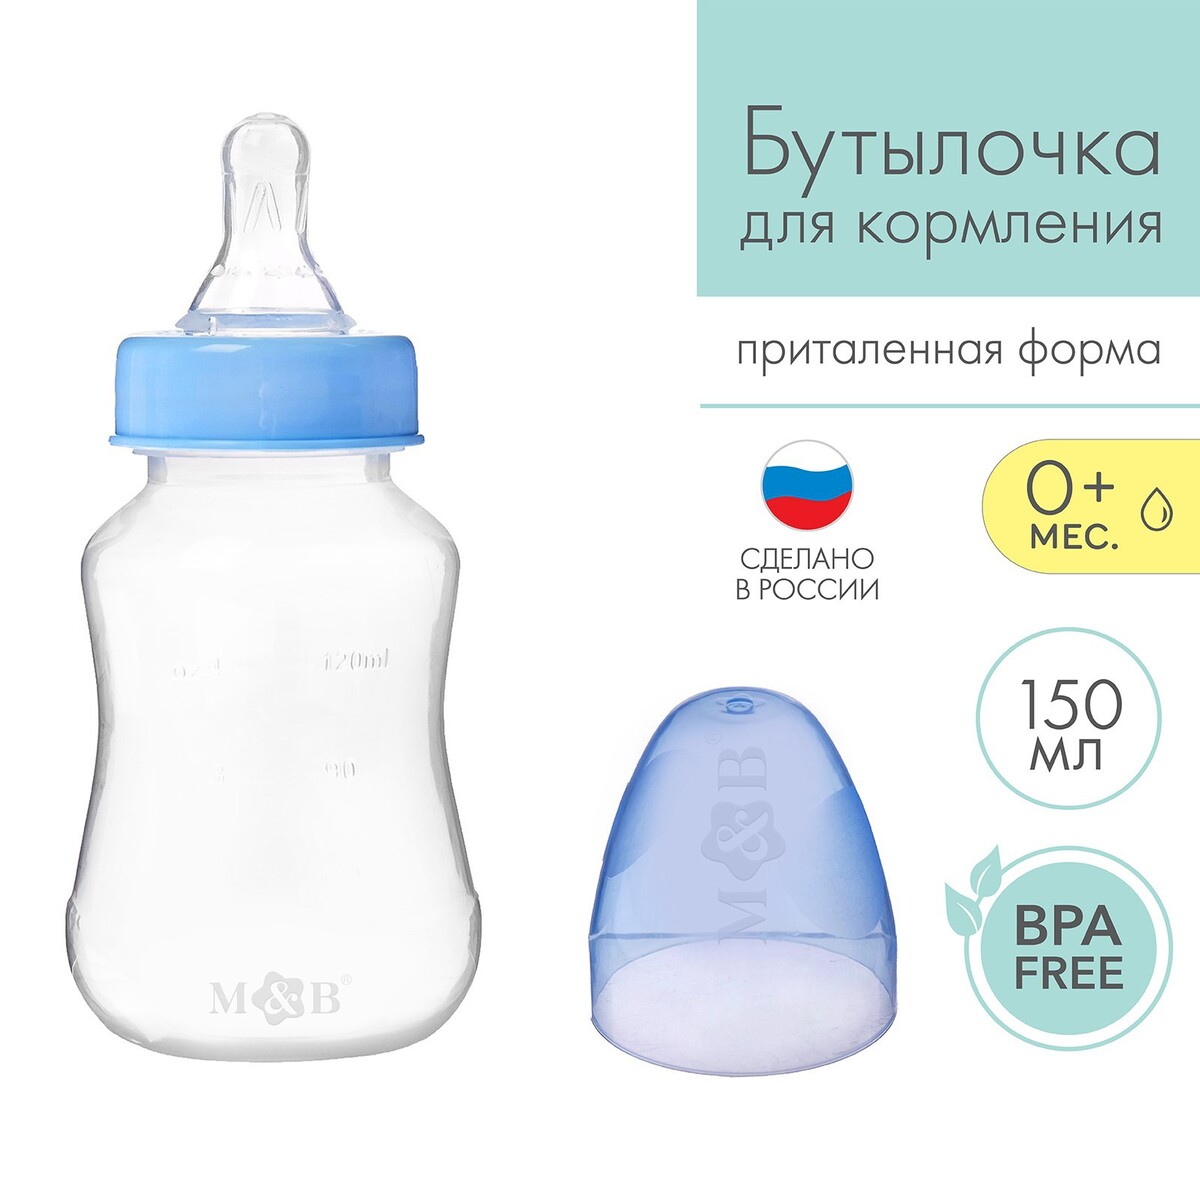 Бутылочка для кормления, классическое горло, приталенная, 150 мл., от 0 мес., цвет синий бутылочка для кормления mum